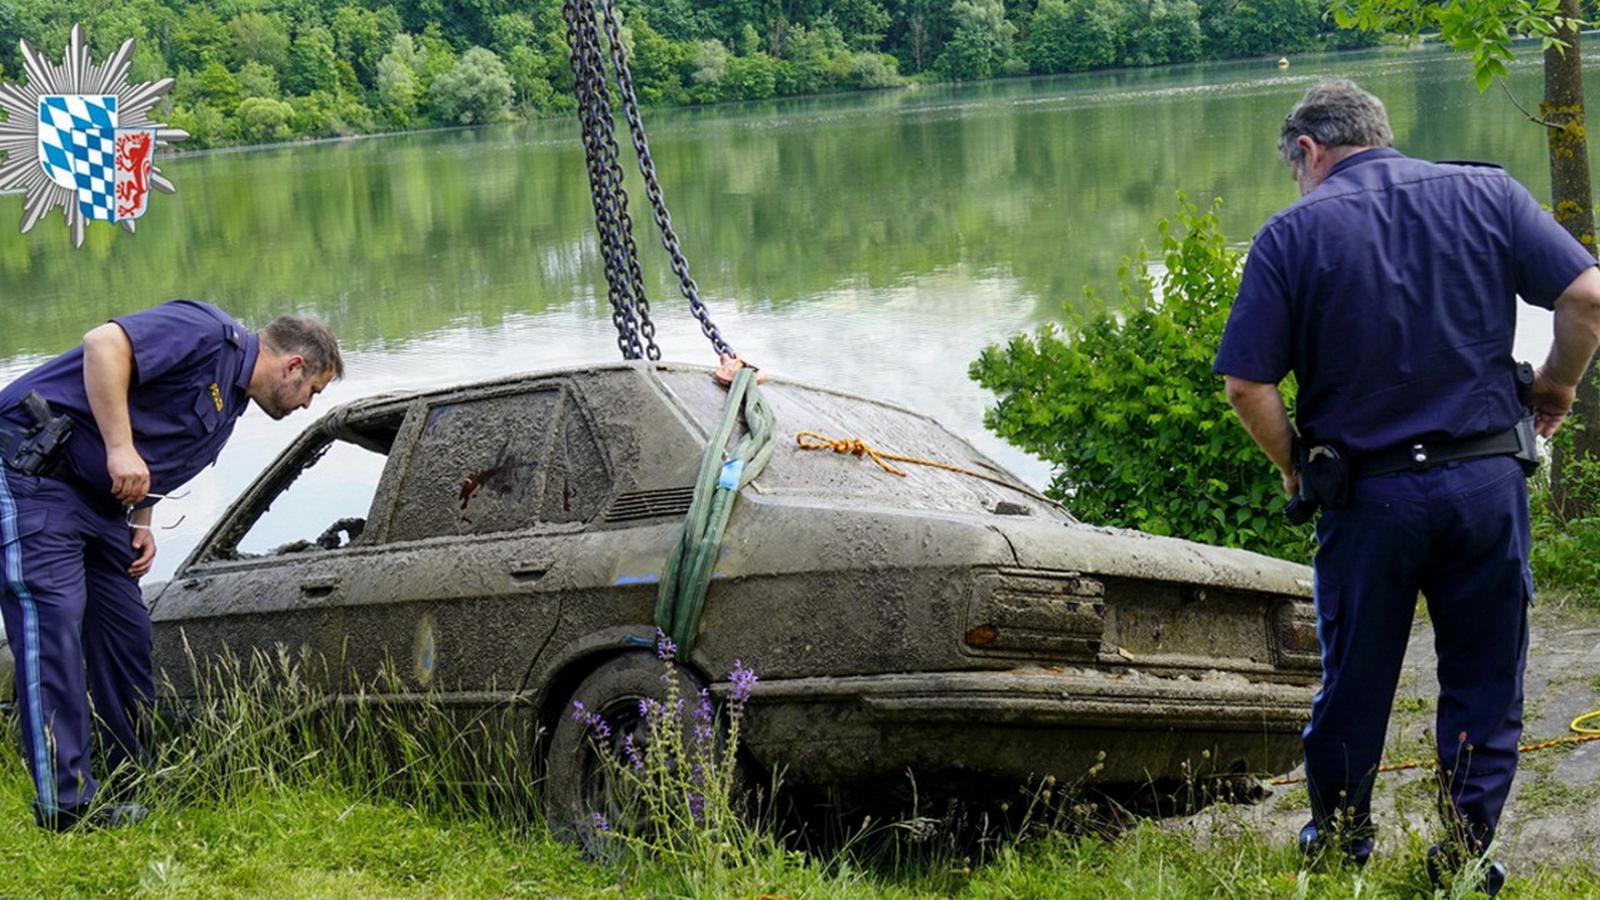 Αυτοκίνητο διατηρήθηκε σε άριστη κατάσταση μέσα στο ποτάμι - Ήταν στον βυθό 35 χρόνια